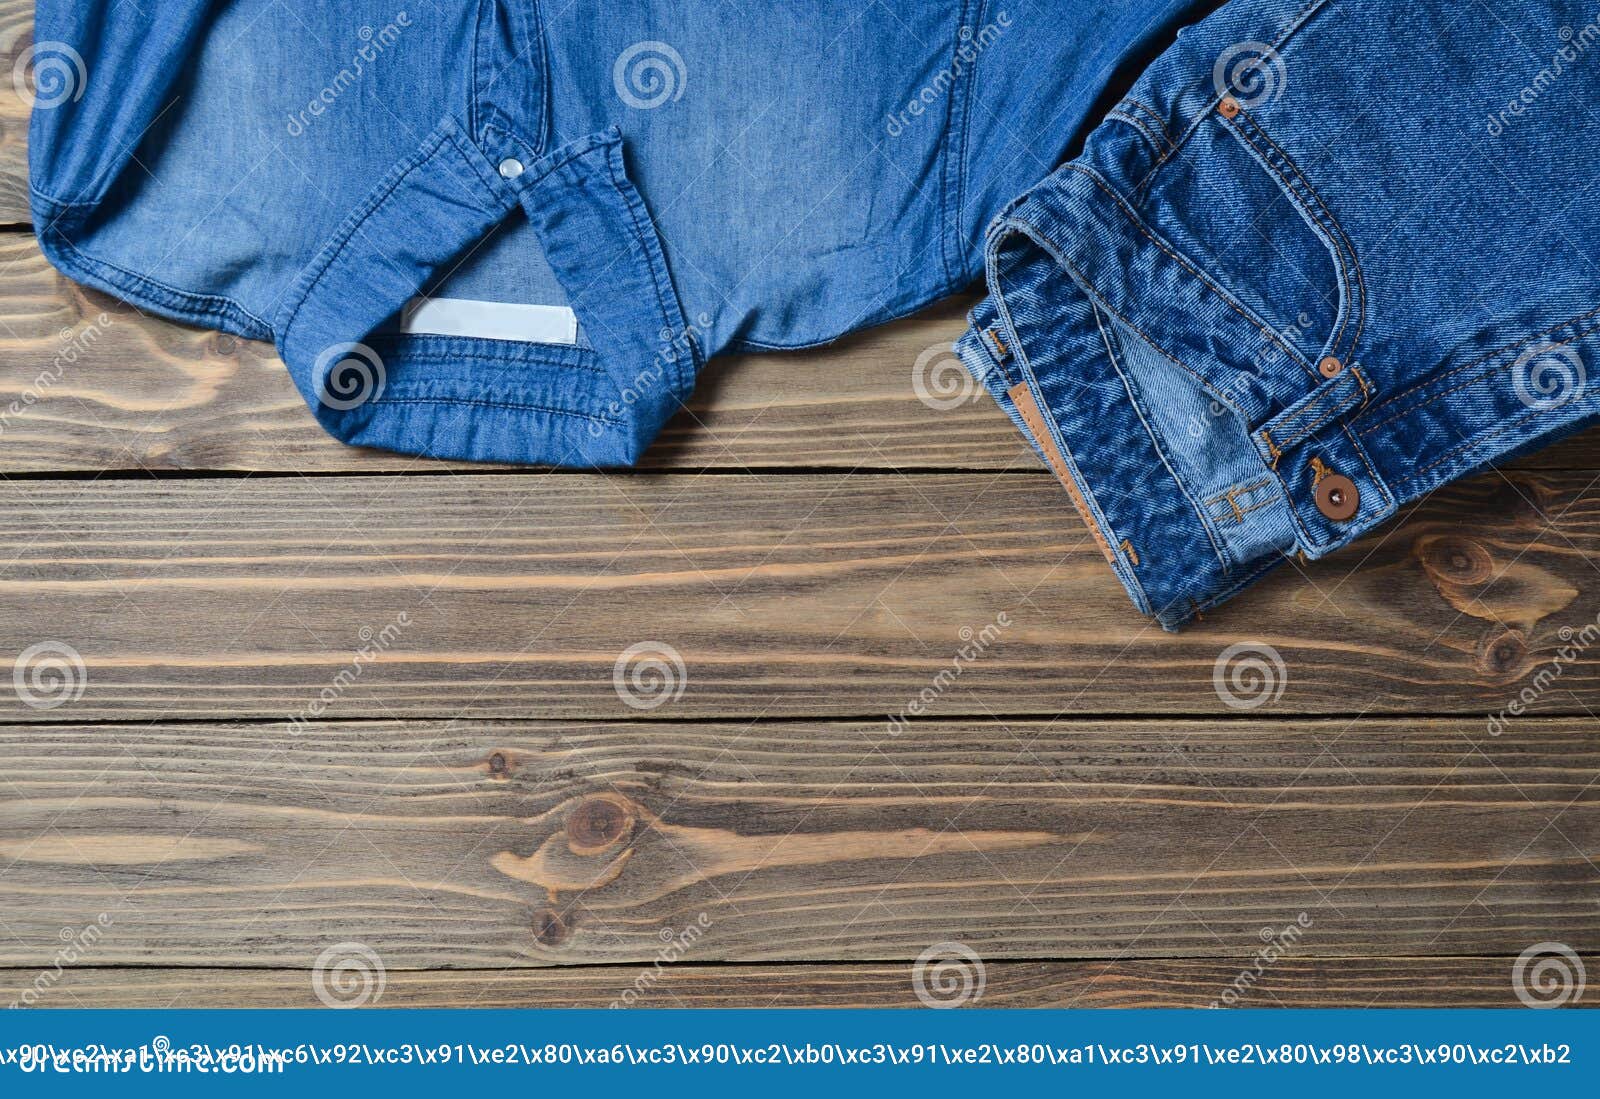 Jeansbroeken En Jeansoverhemd Op Een Houten Oppervlakte Stock ...